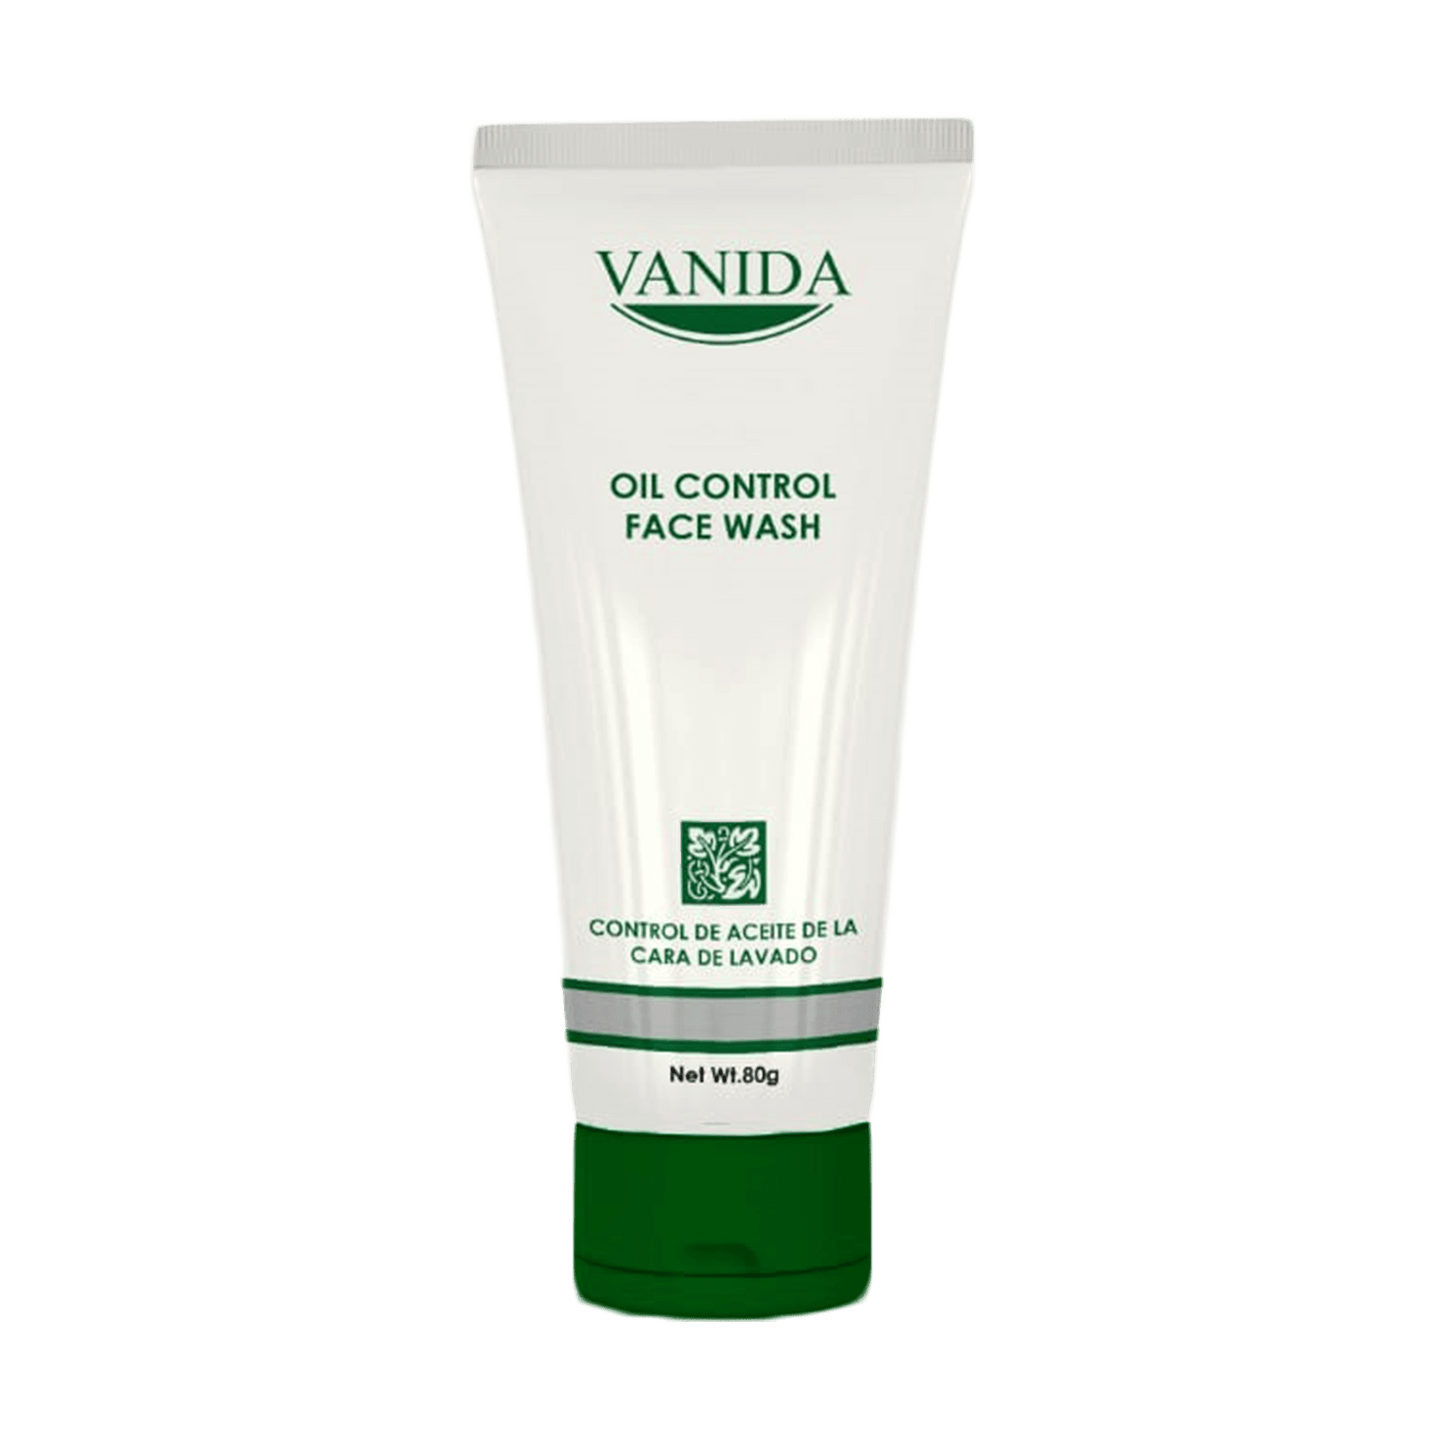 Vanida Face Wash - Healthifyme.pk